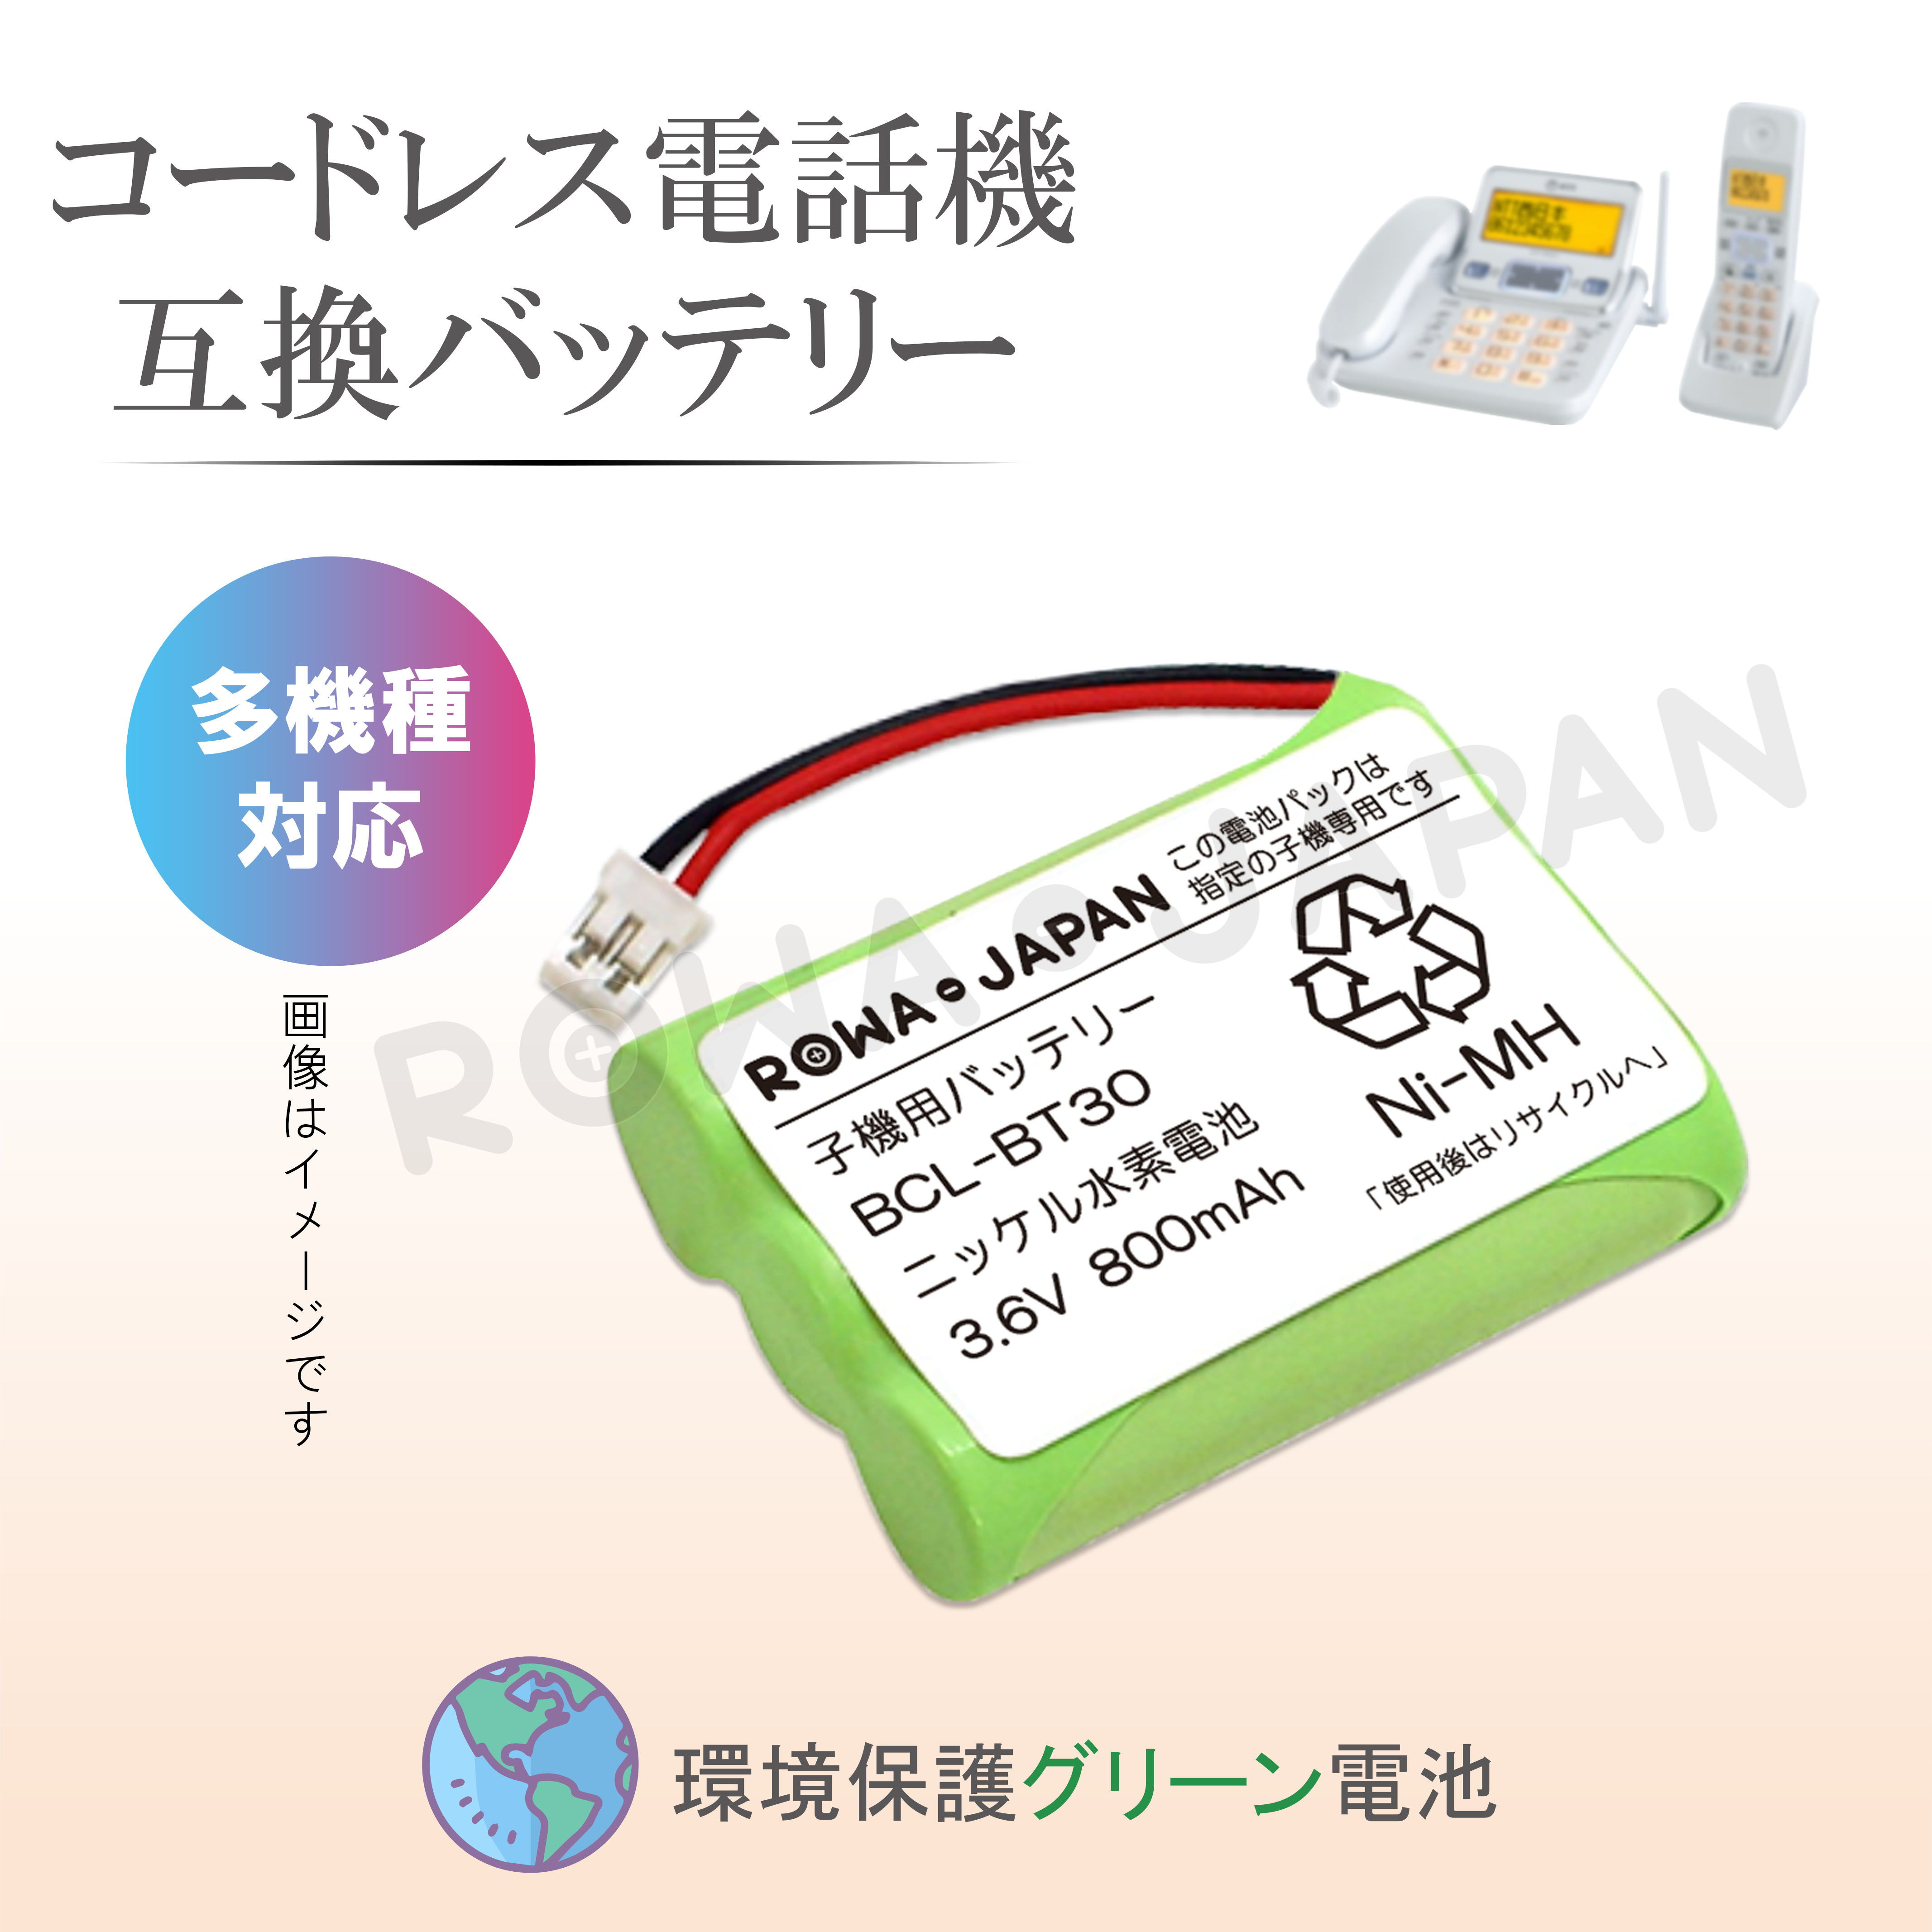 TF-BT10-C-2P コードレス電話/FAX用交換充電池 ロワ | ロワジャパン